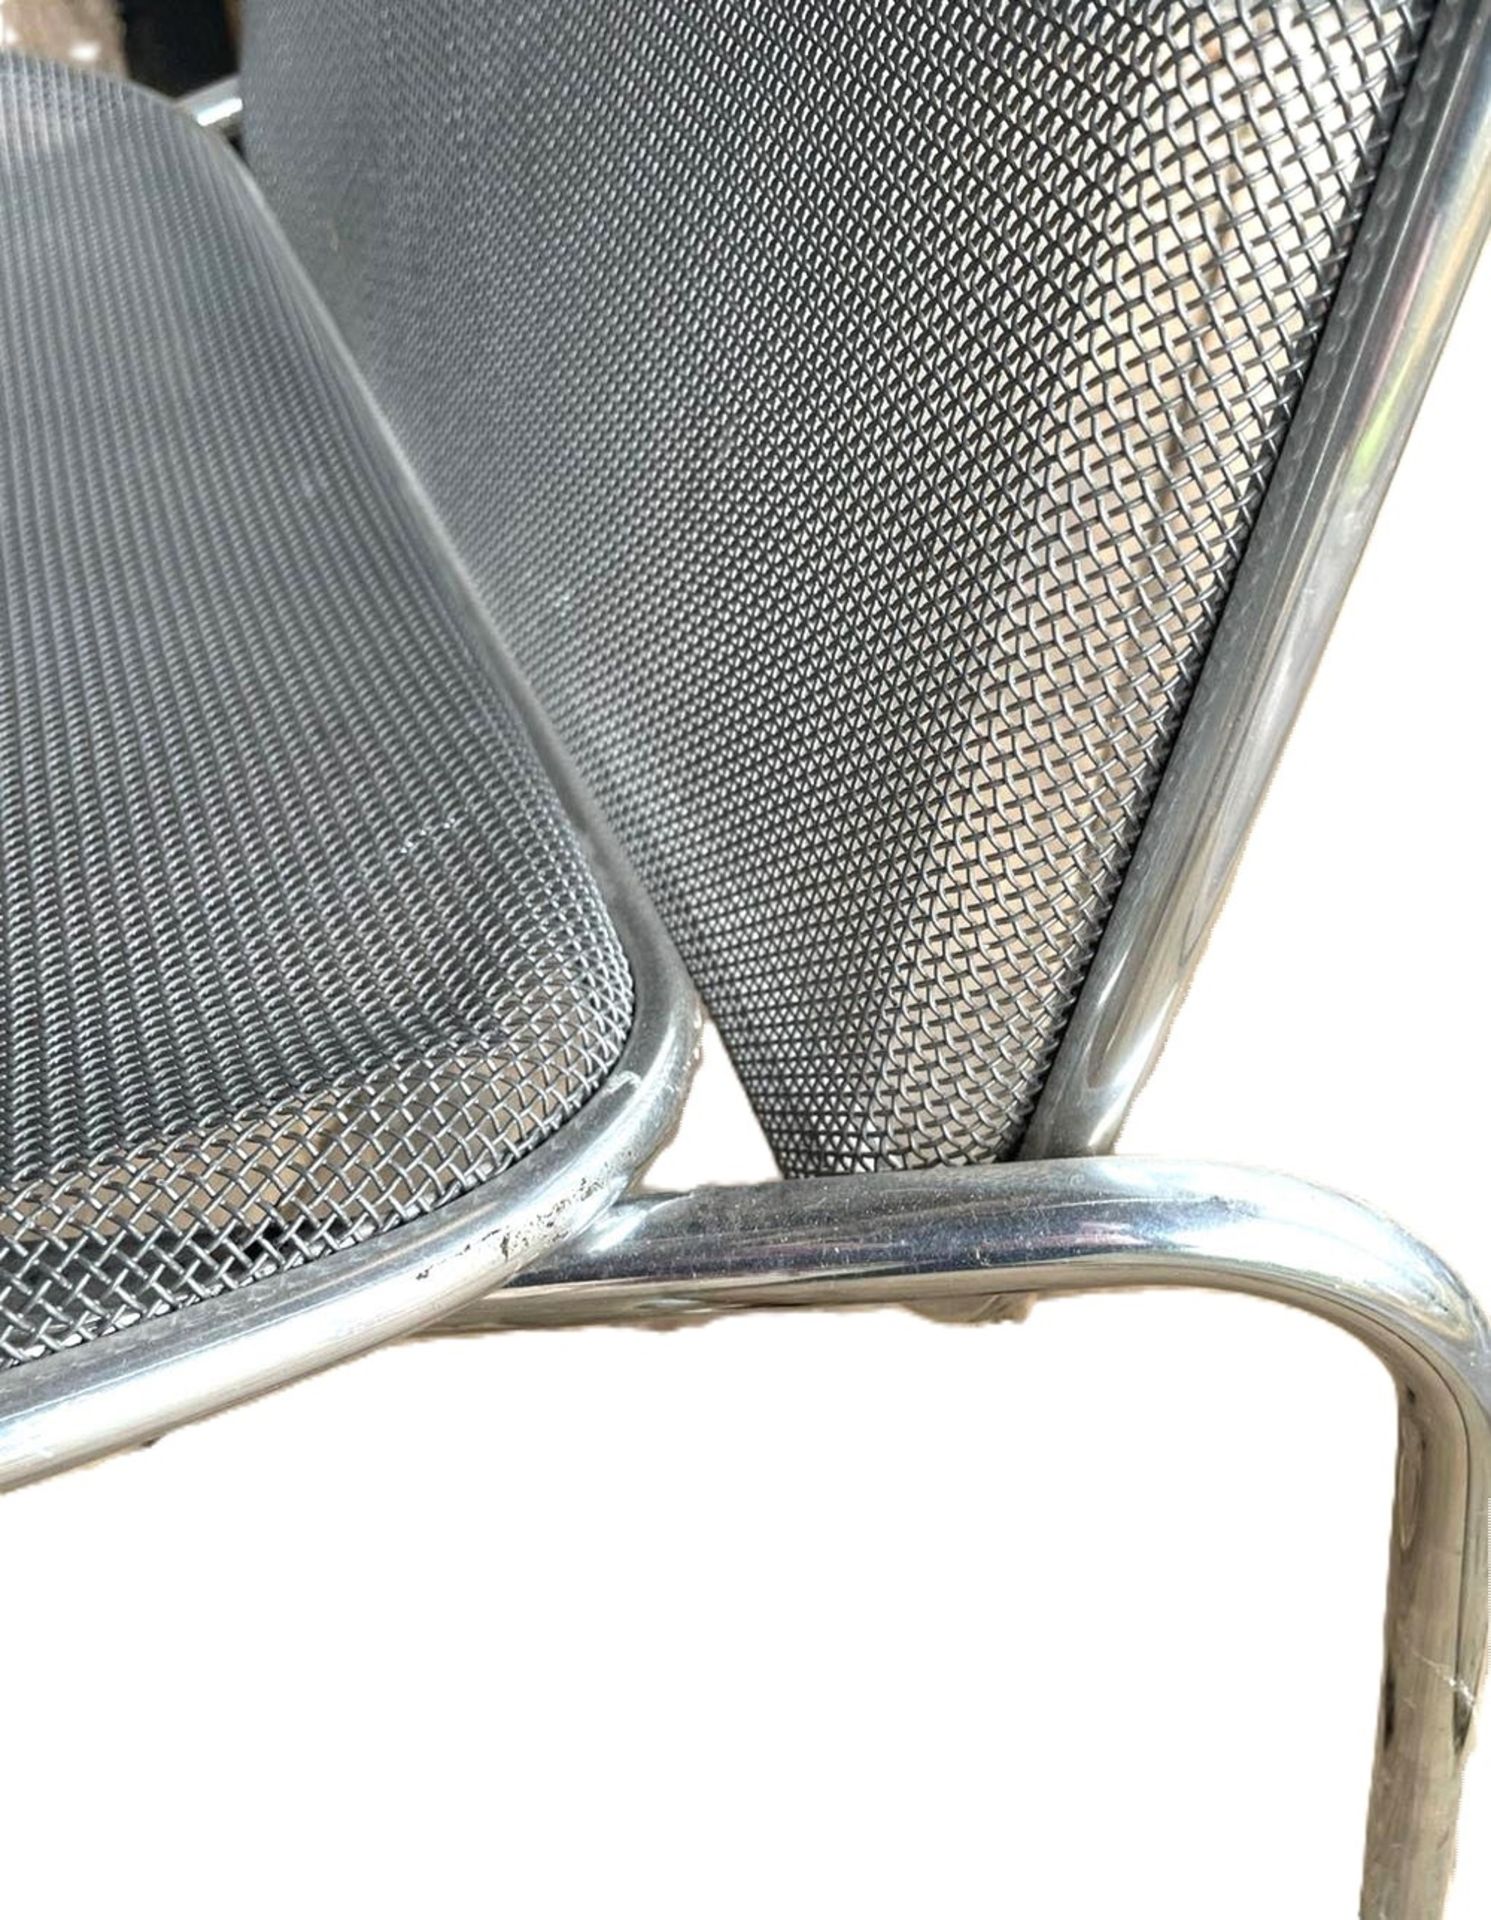 wohl Firma Knoll, Metall Longchair, Sitzfläche abnehmbar, Designklassiker aus den 80er Jahren. - Image 3 of 3